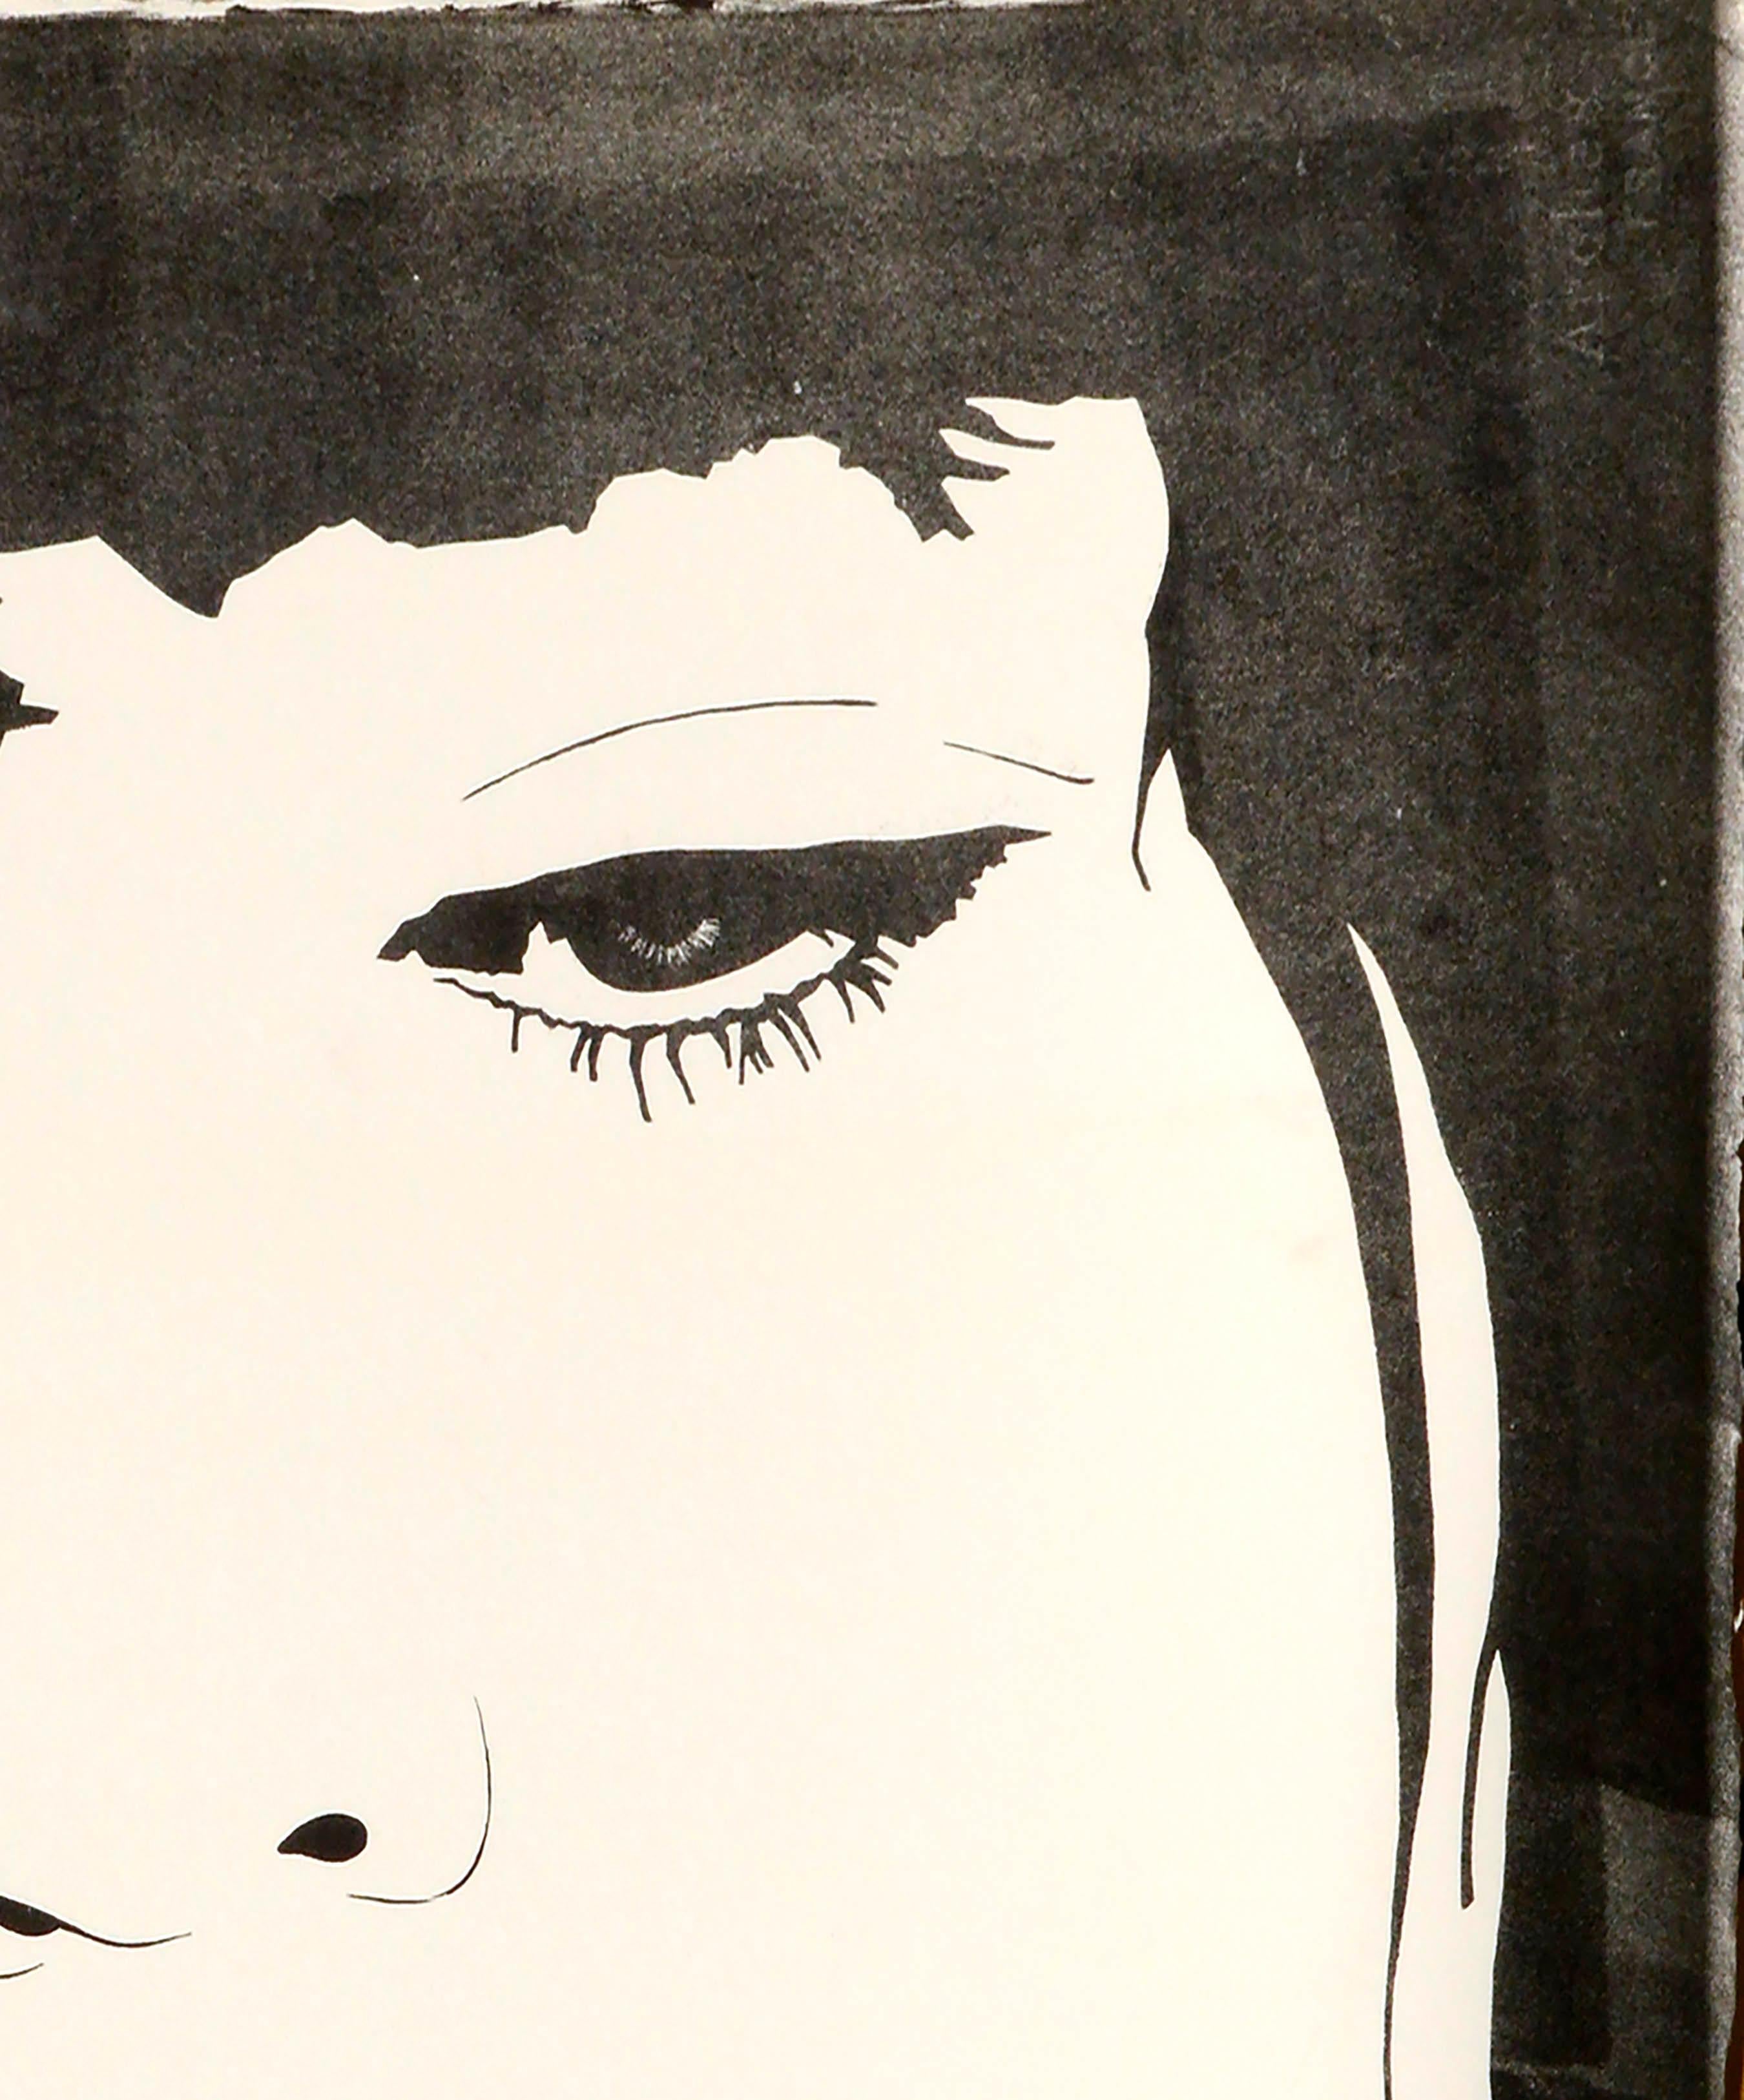 Portrait de femme de style Pop Art ressemblant à Kate Moss par Marc Foster Grant (américain, 20e siècle). Non signé, provenant d'une collection de ses œuvres. Non encadré.

Marc Foster Grant (américain, né en 1947) est un artiste de San Diego